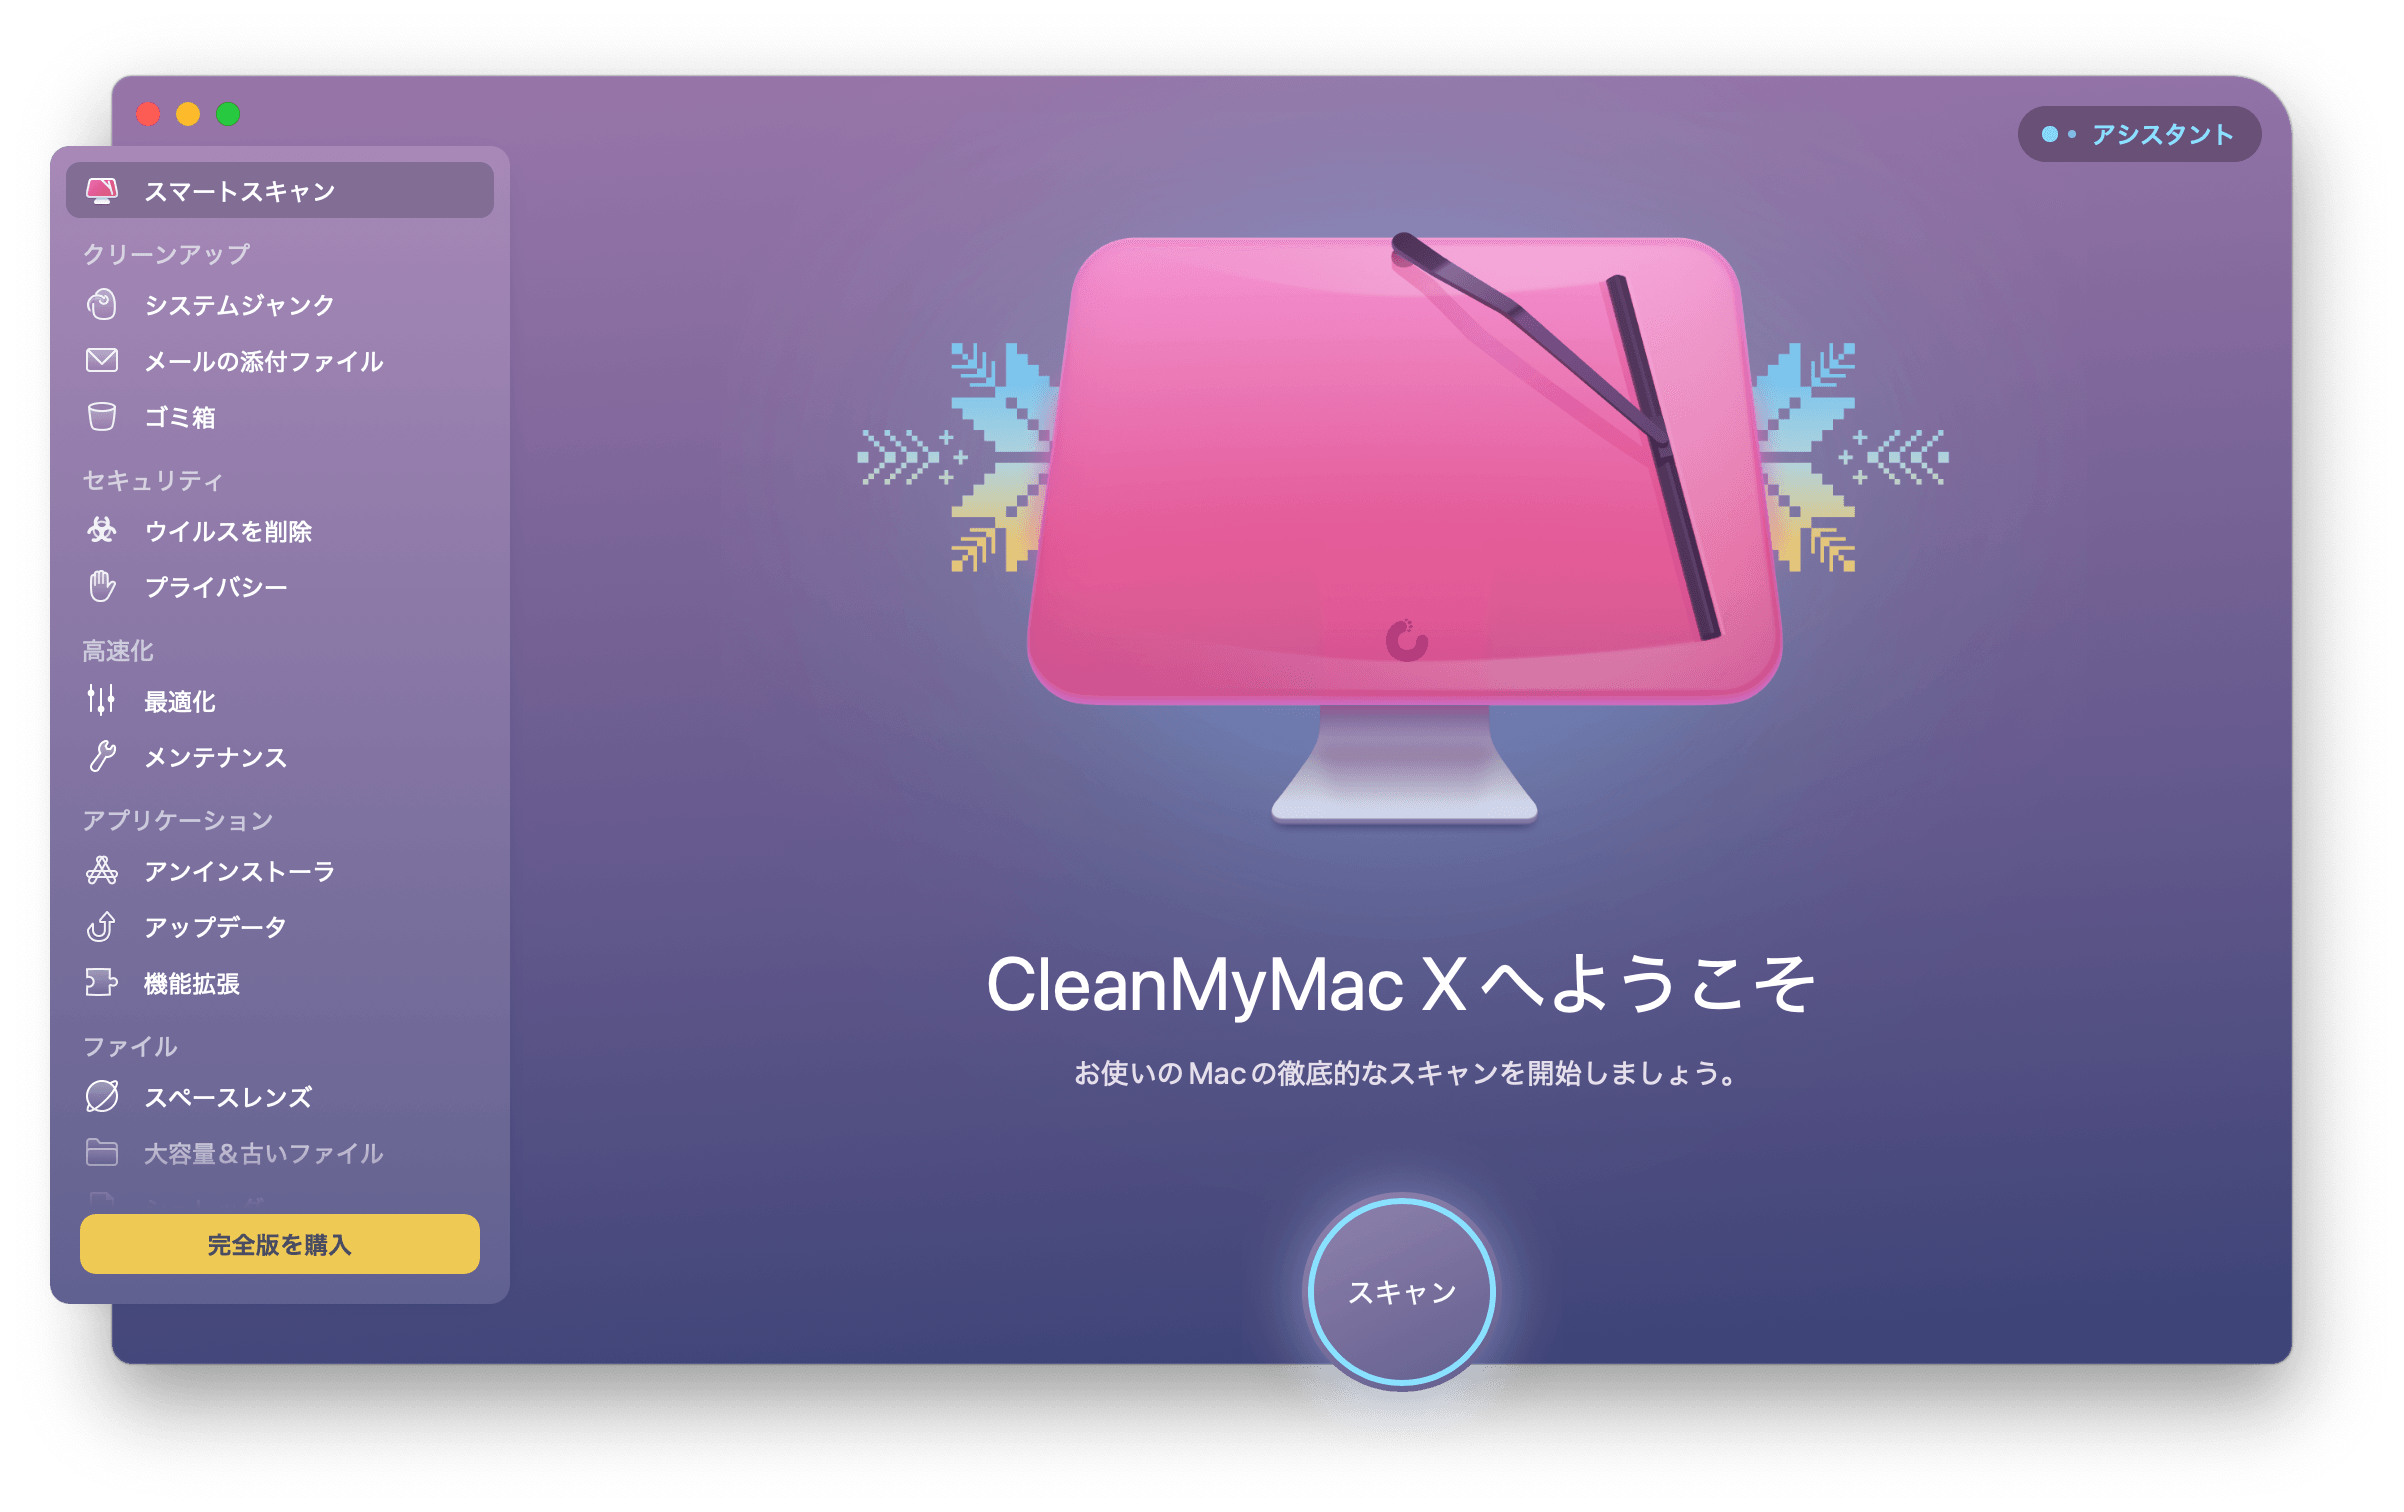 cleanmymac-jp.png